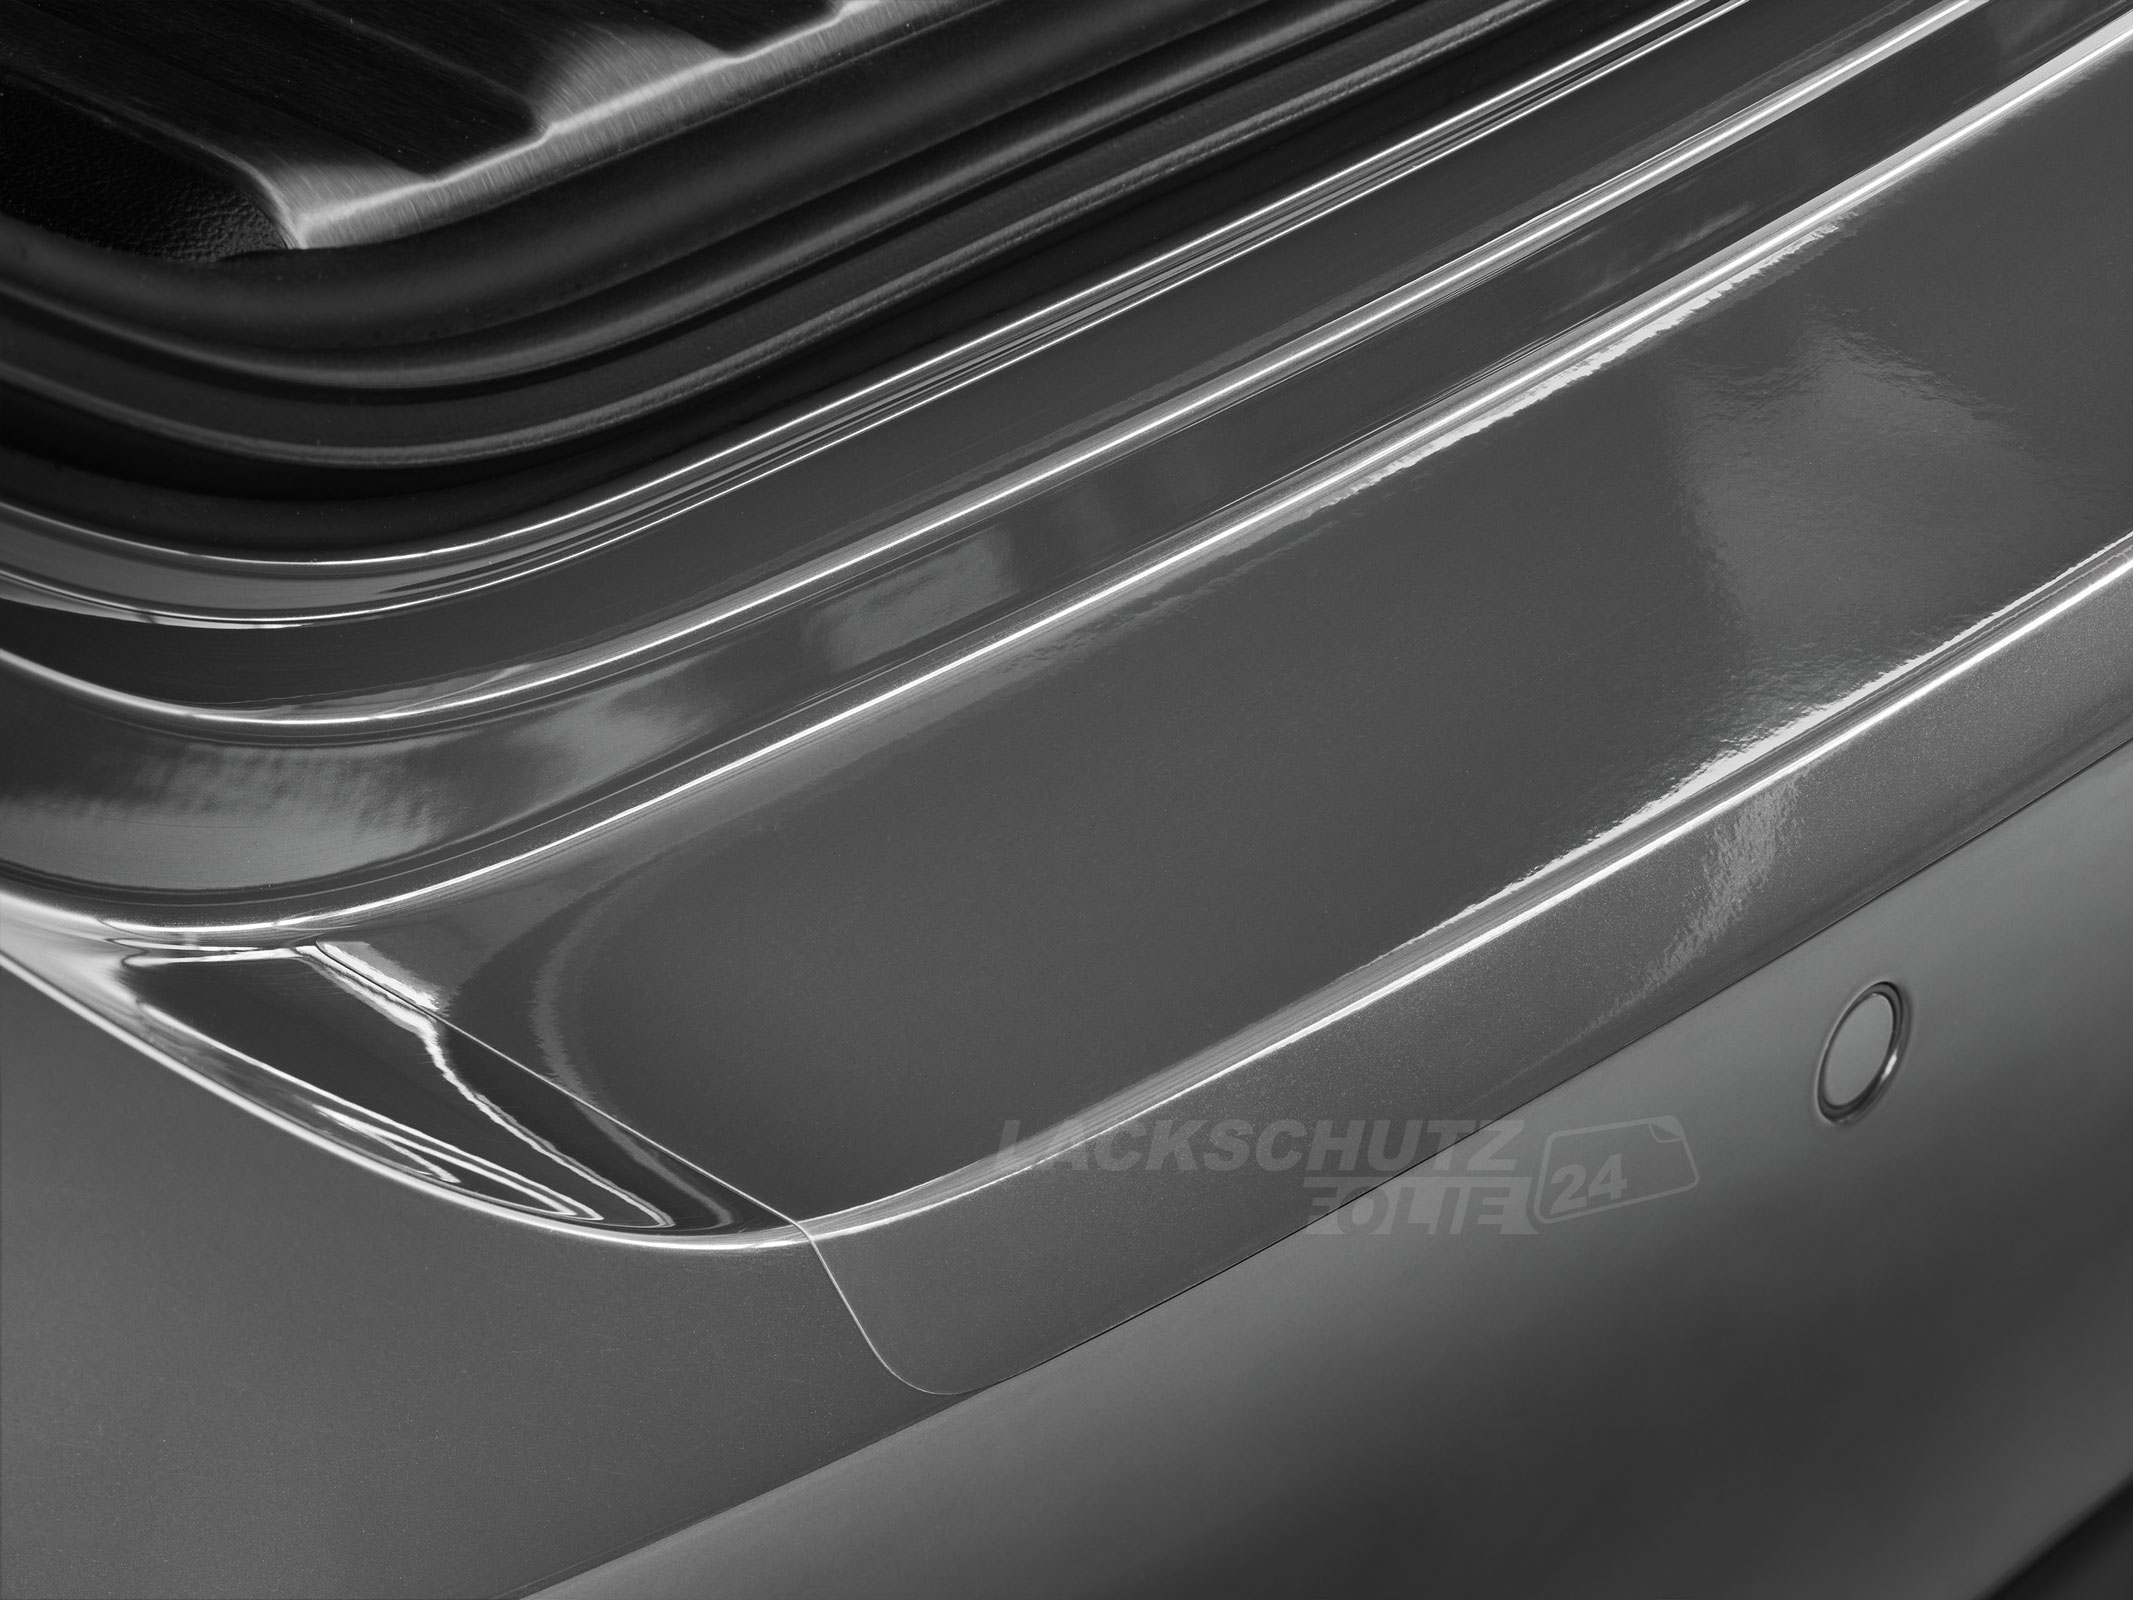 Ladekantenschutzfolie - Transparent Glatt Hochglänzend 150 µm stark für Volvo S60 BJ 10/2010-2013